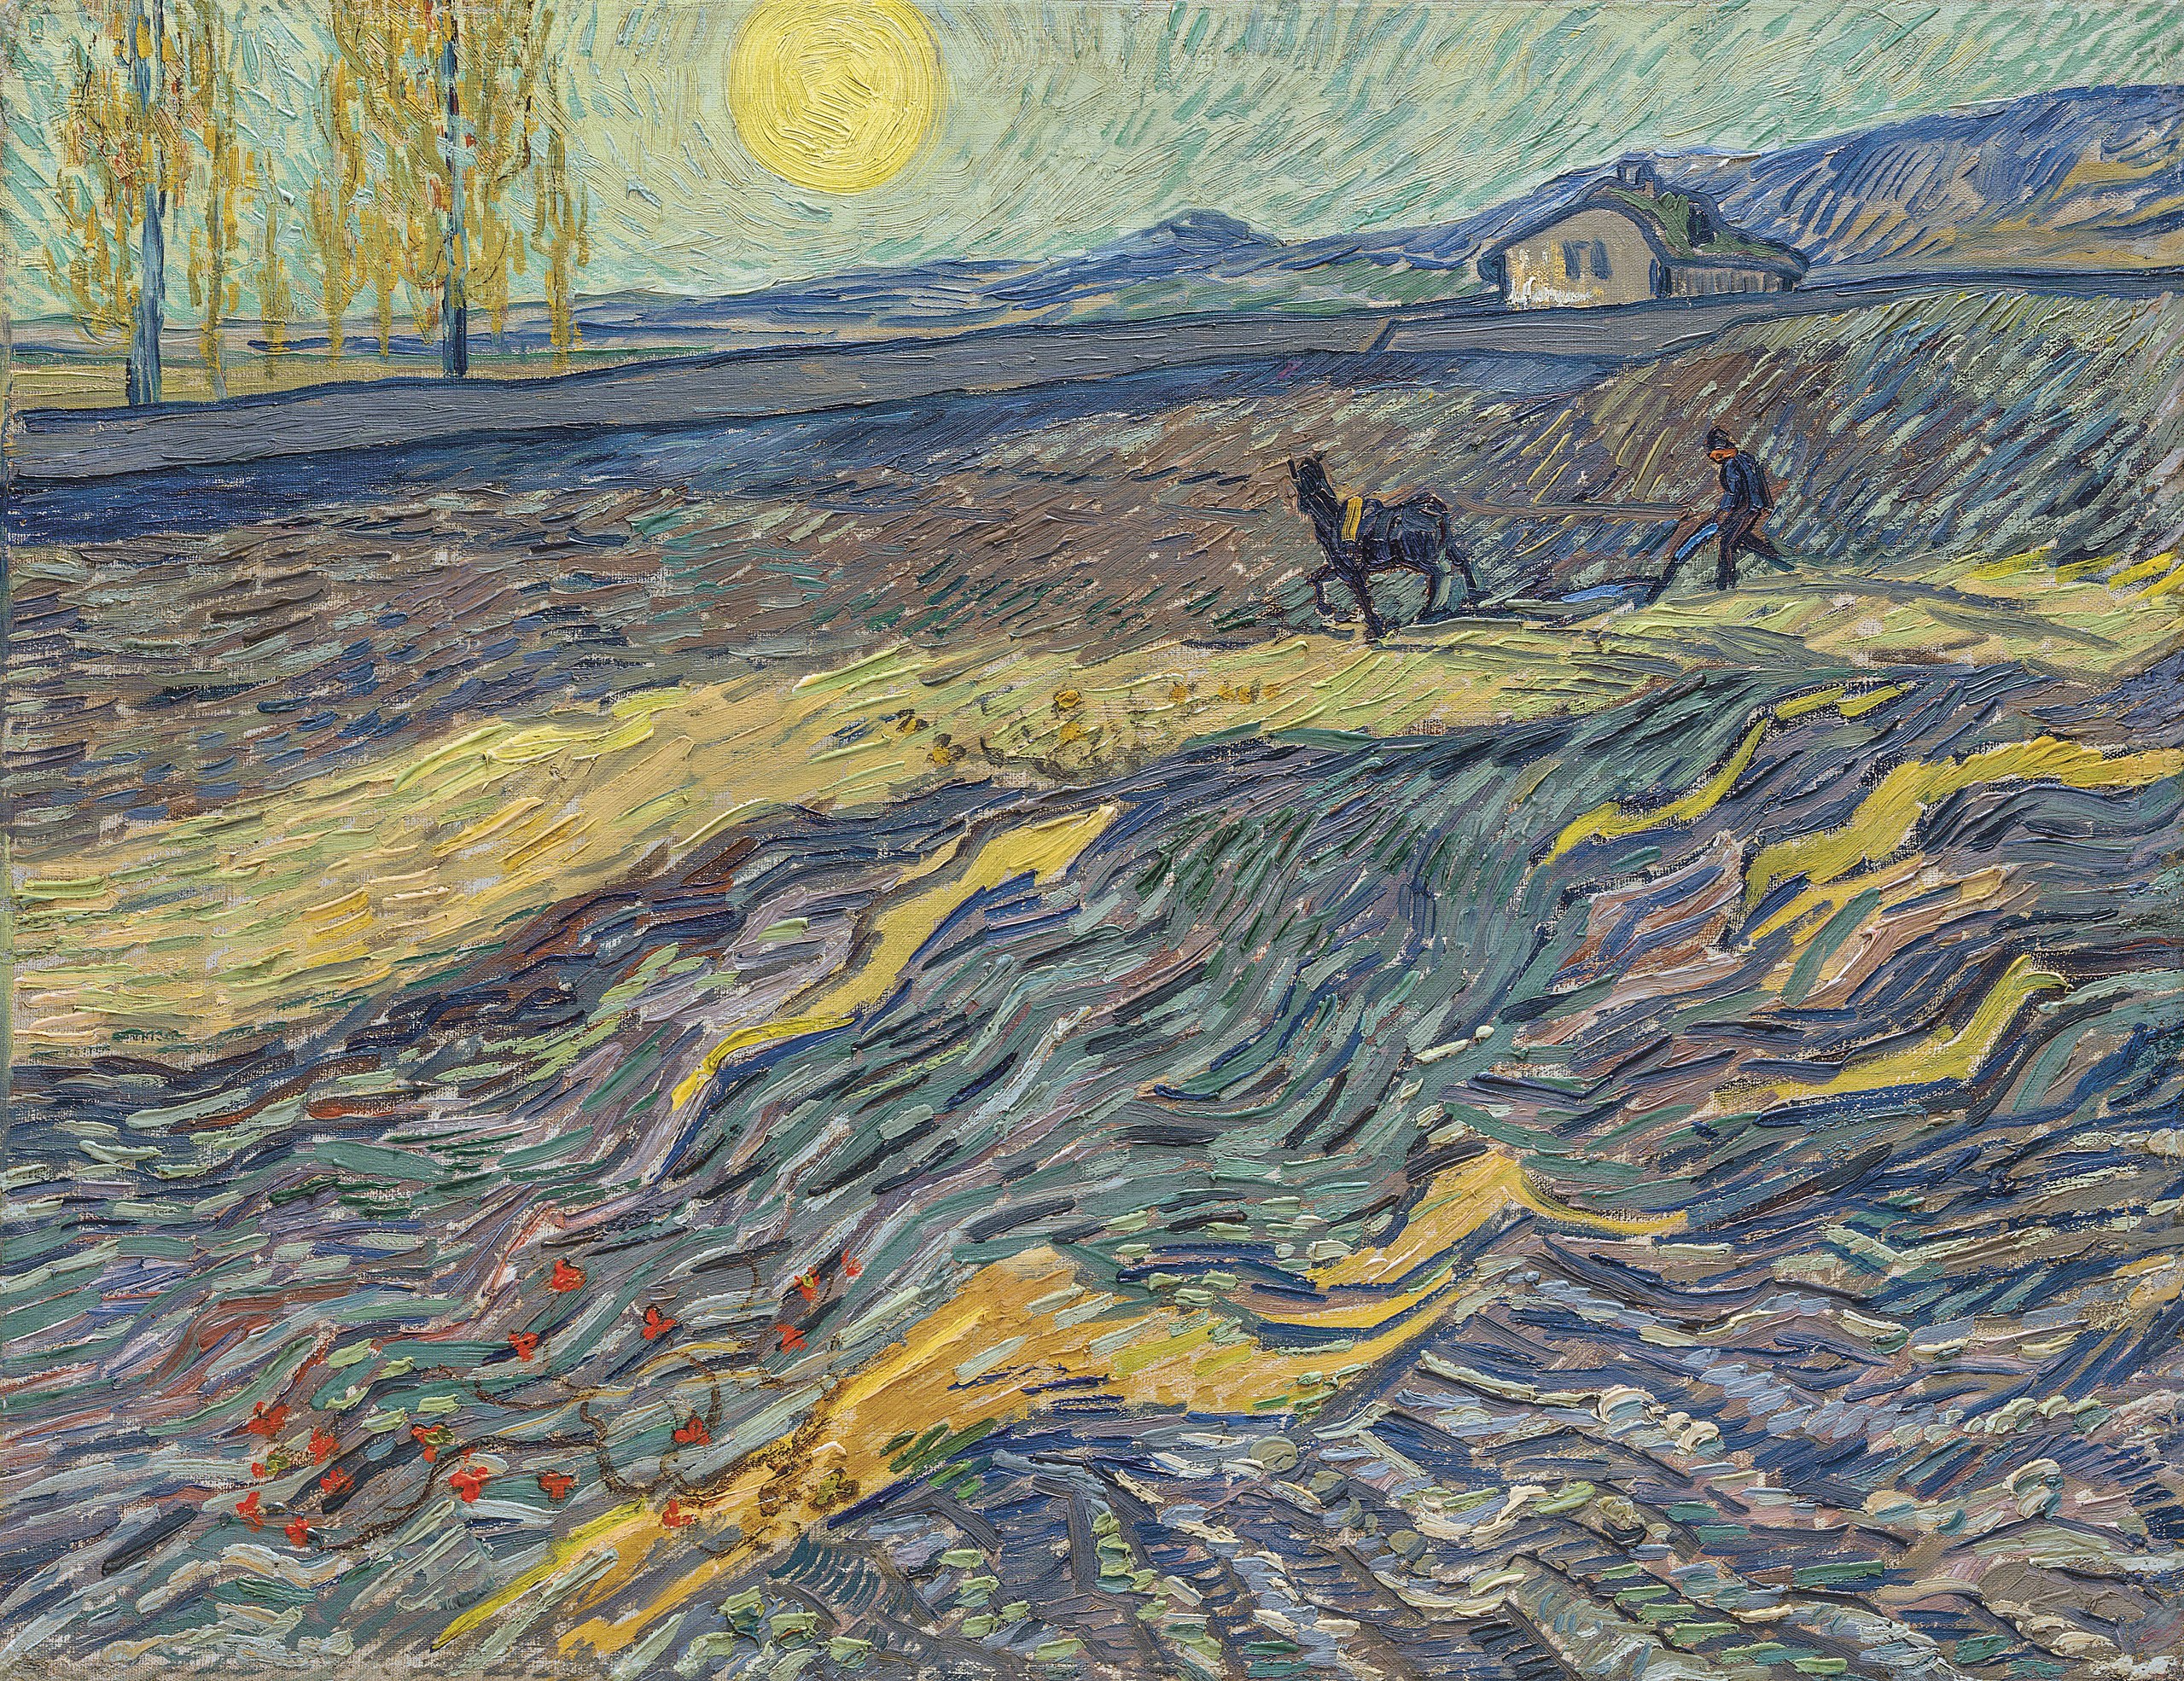 Le laboureur dans un champ by Vincent van Gogh - 1889 - 50,3 x 64,9 cm collection privée